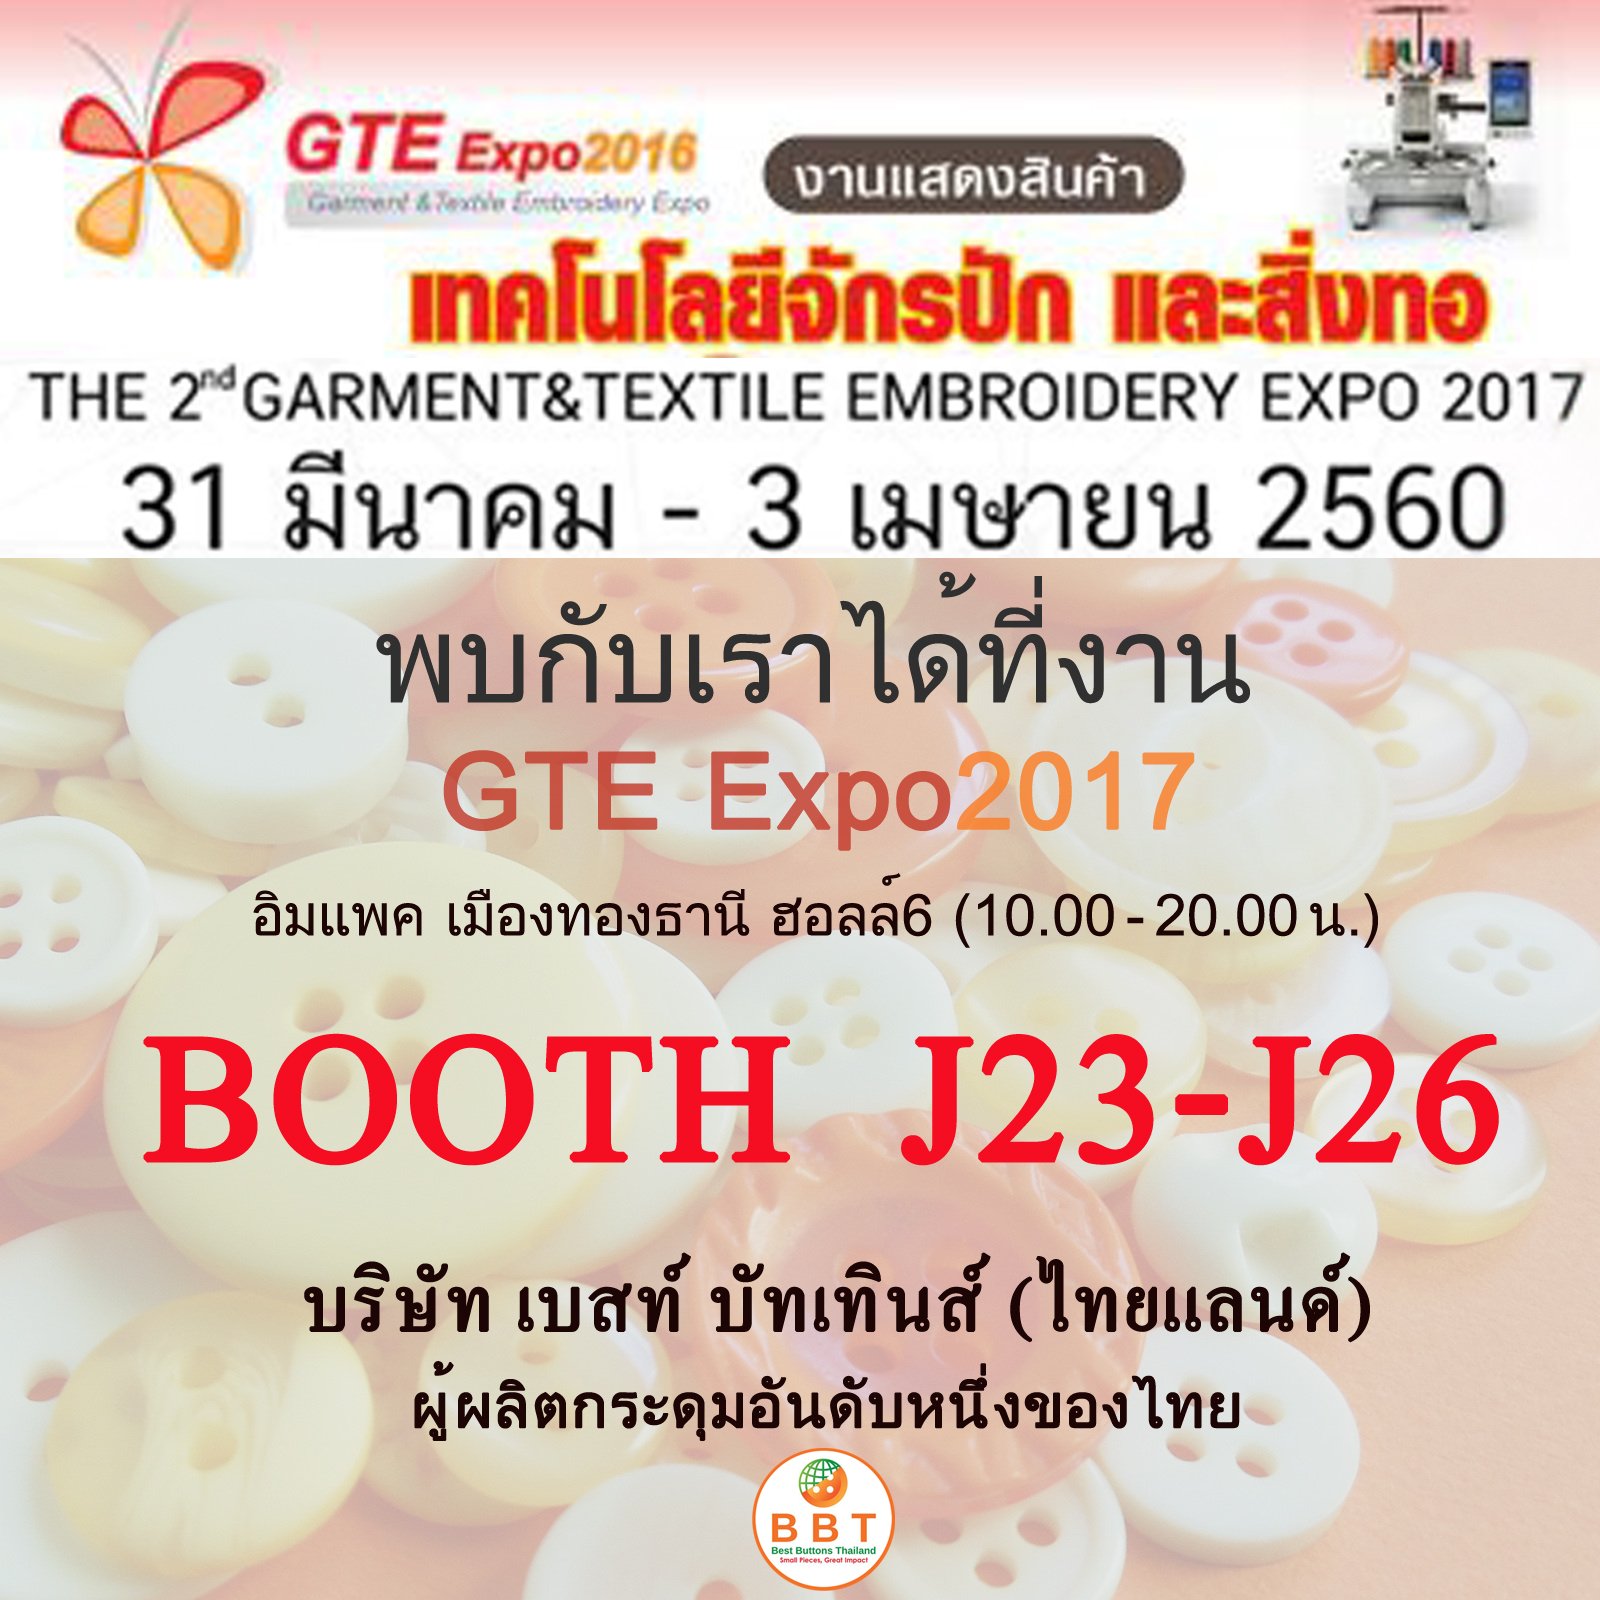 GTE Expo 2017 งานแสดงเทคโนโลยี จักรปัก อุตสาหกรรมสิ่งทอไทย